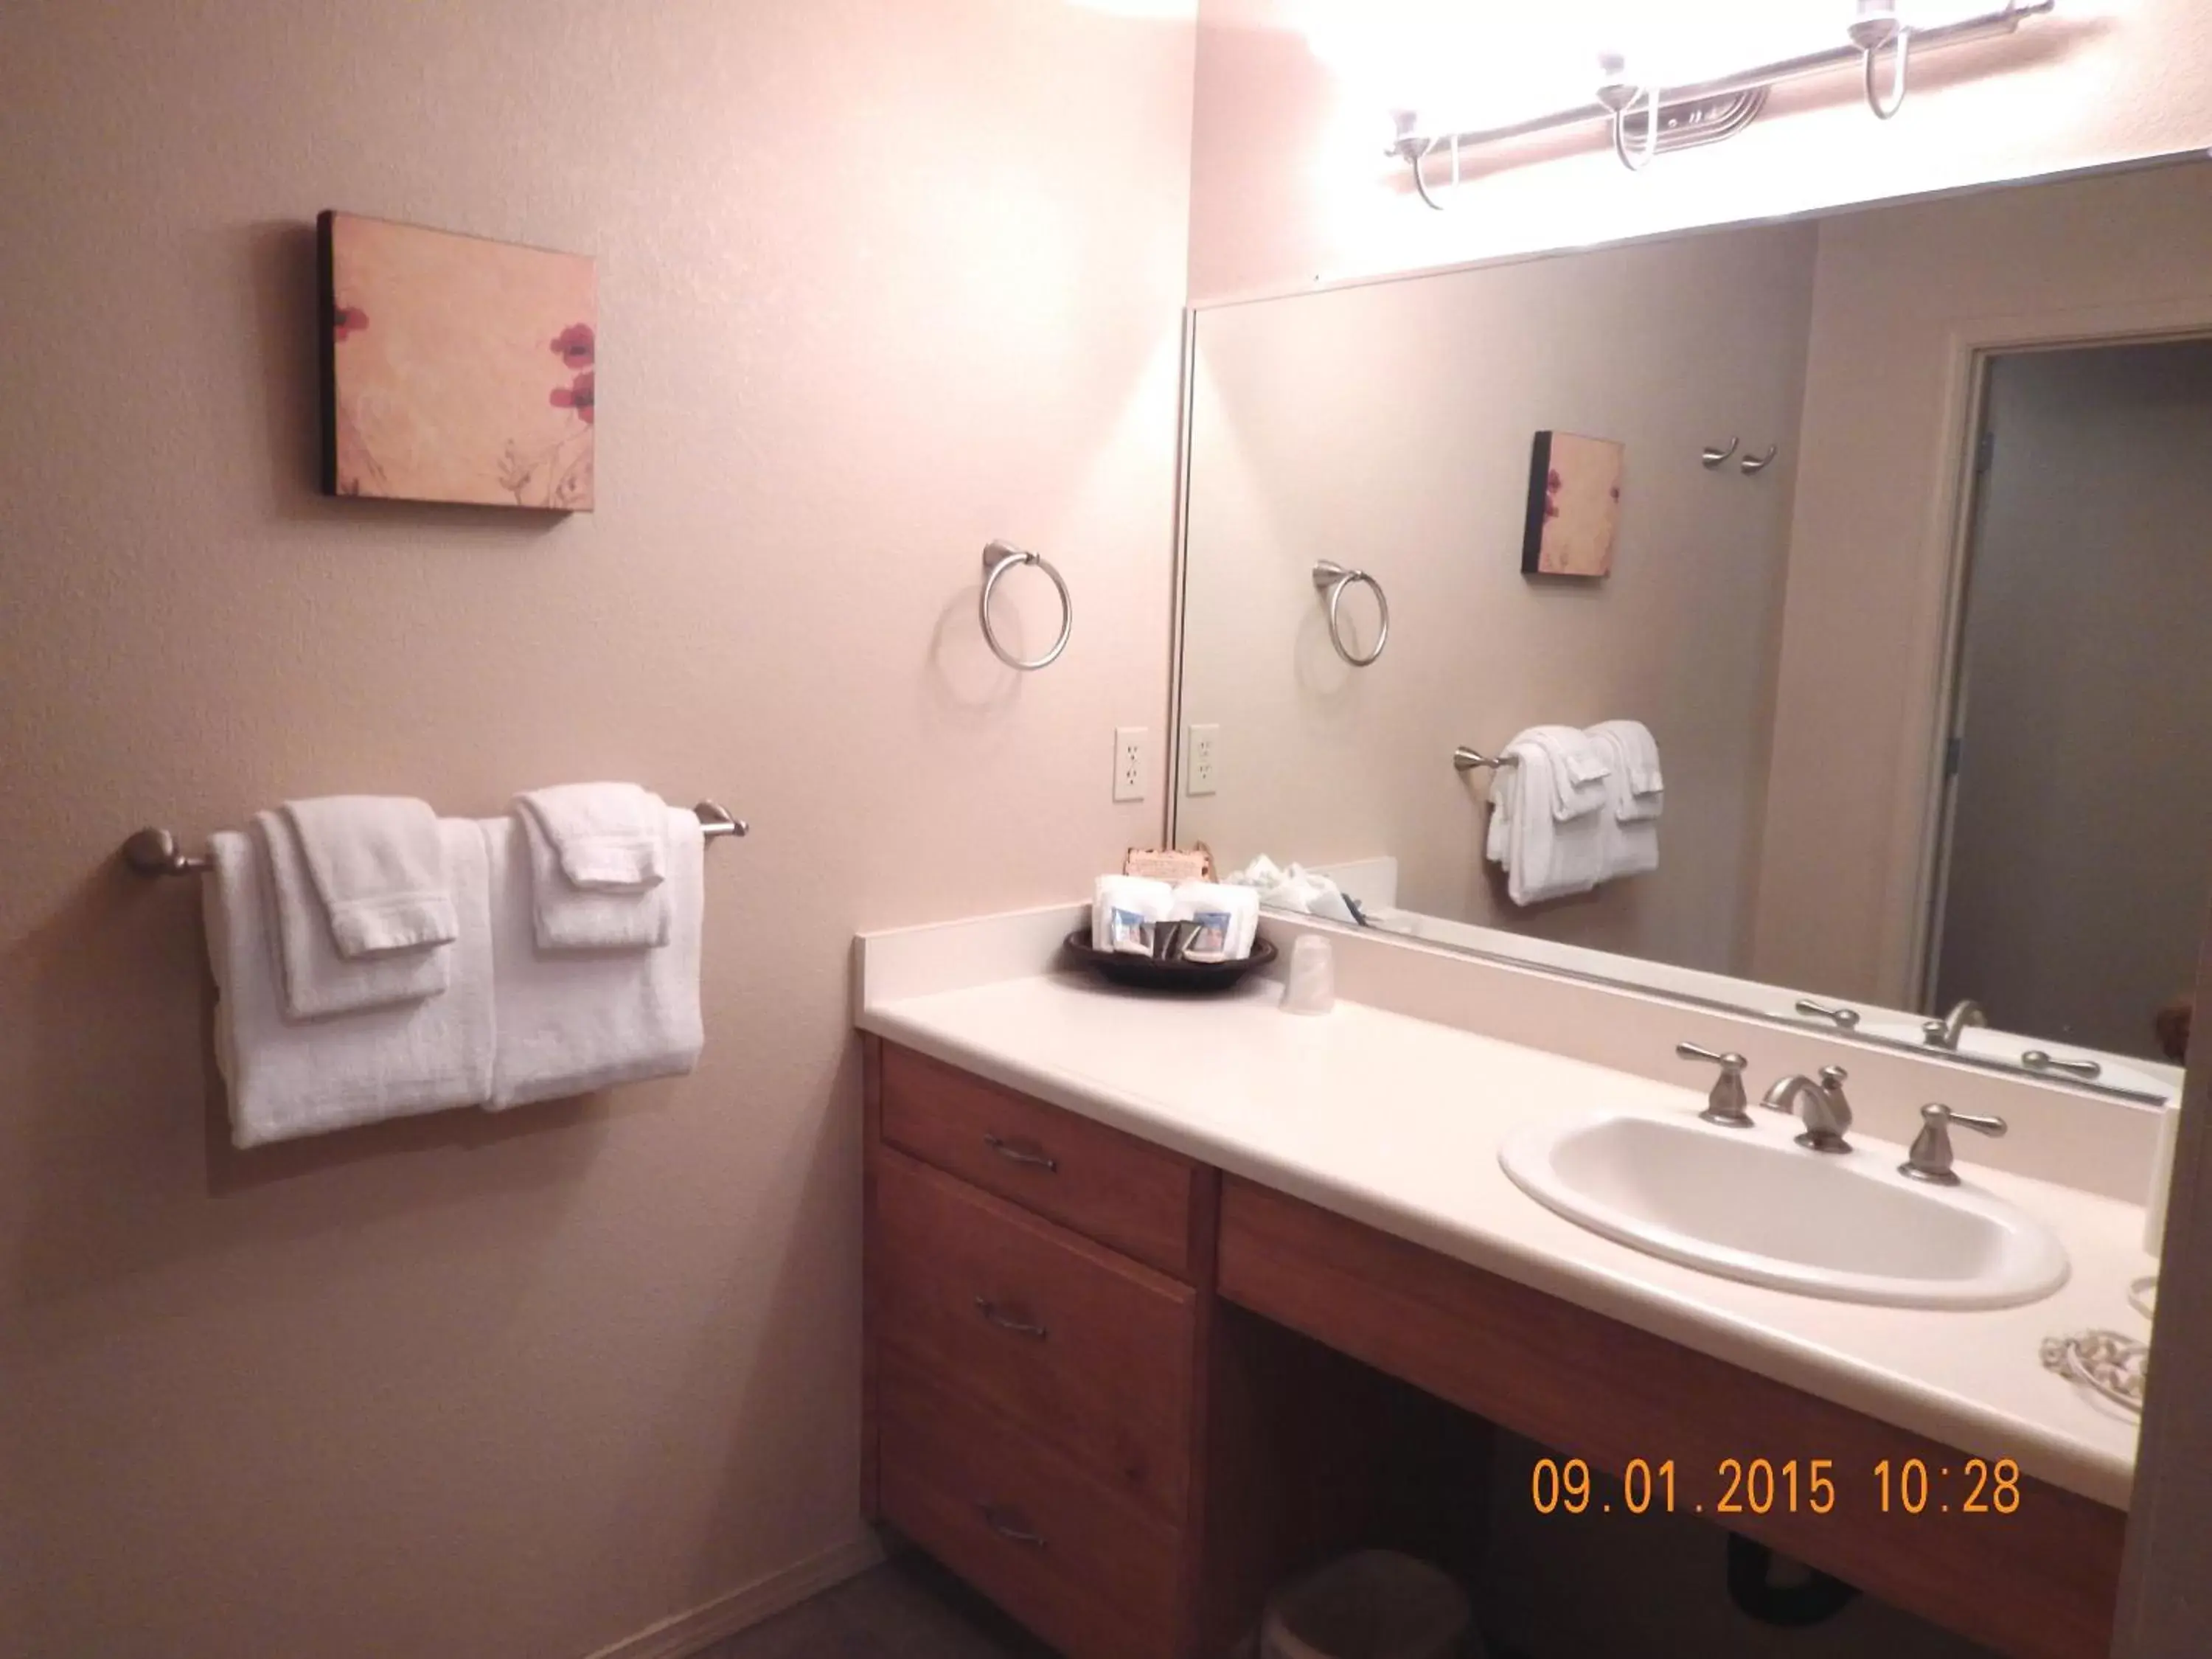 Bathroom in Mount Shasta Resort